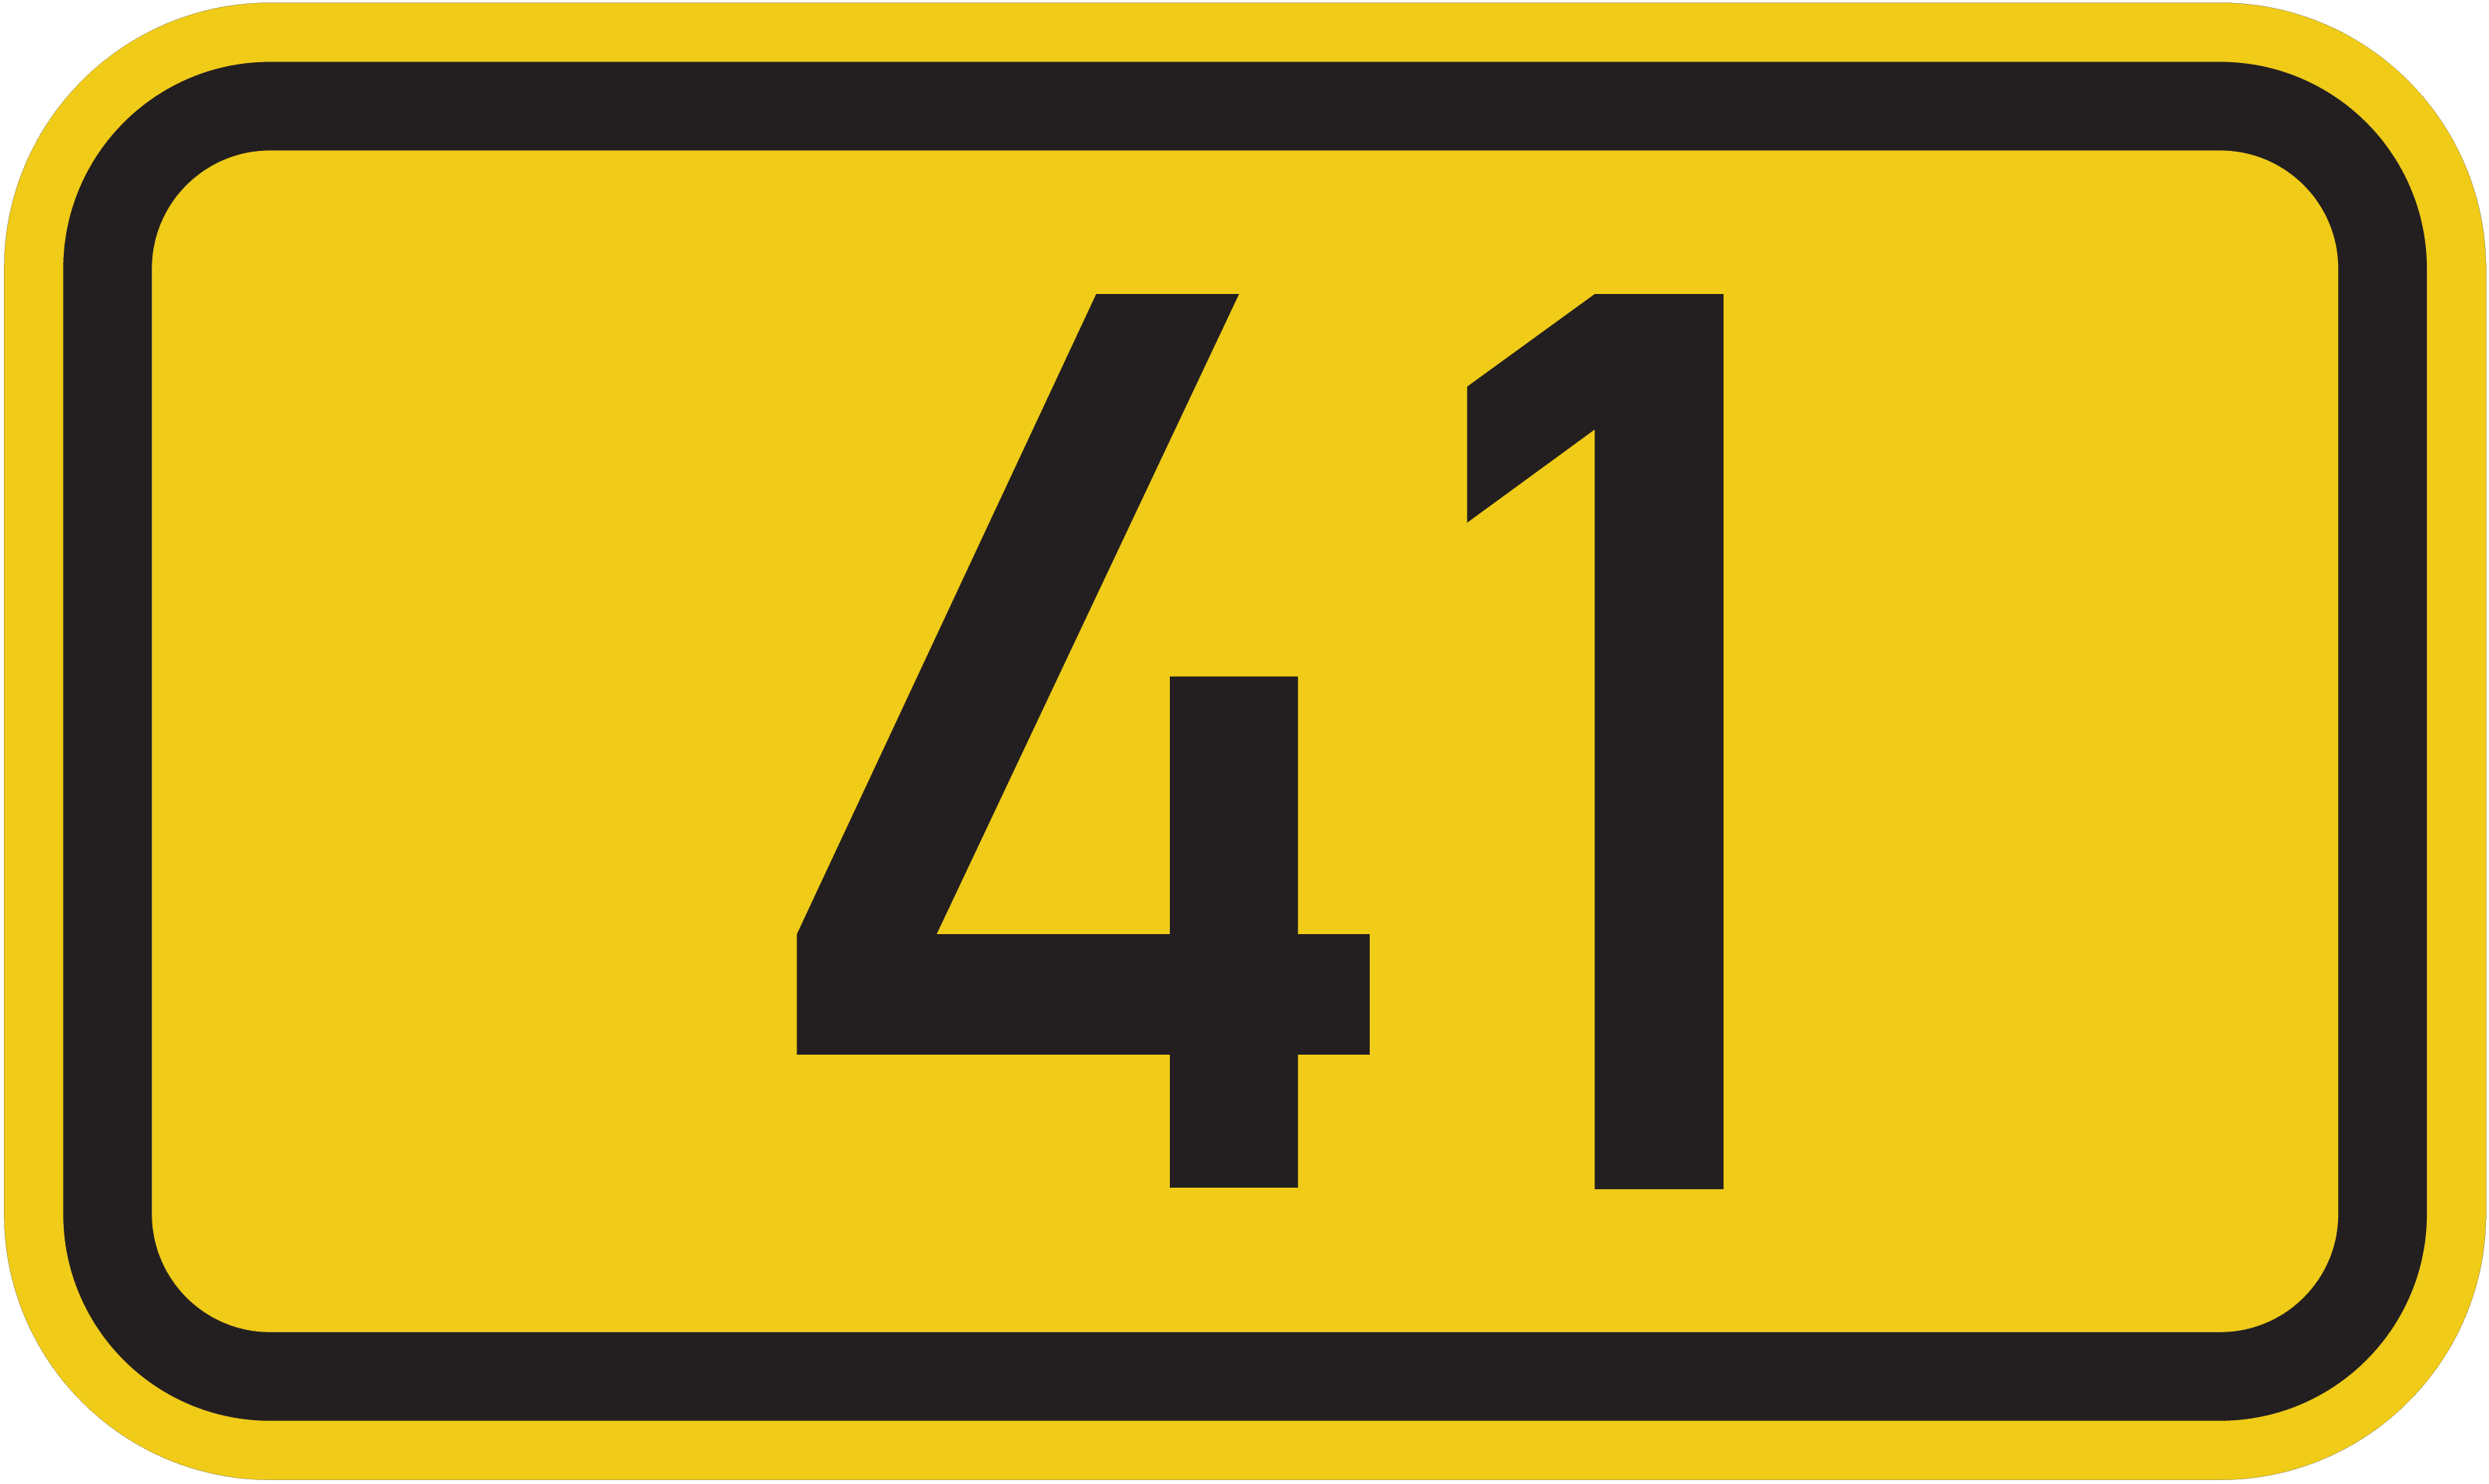 Bundesstraße 41